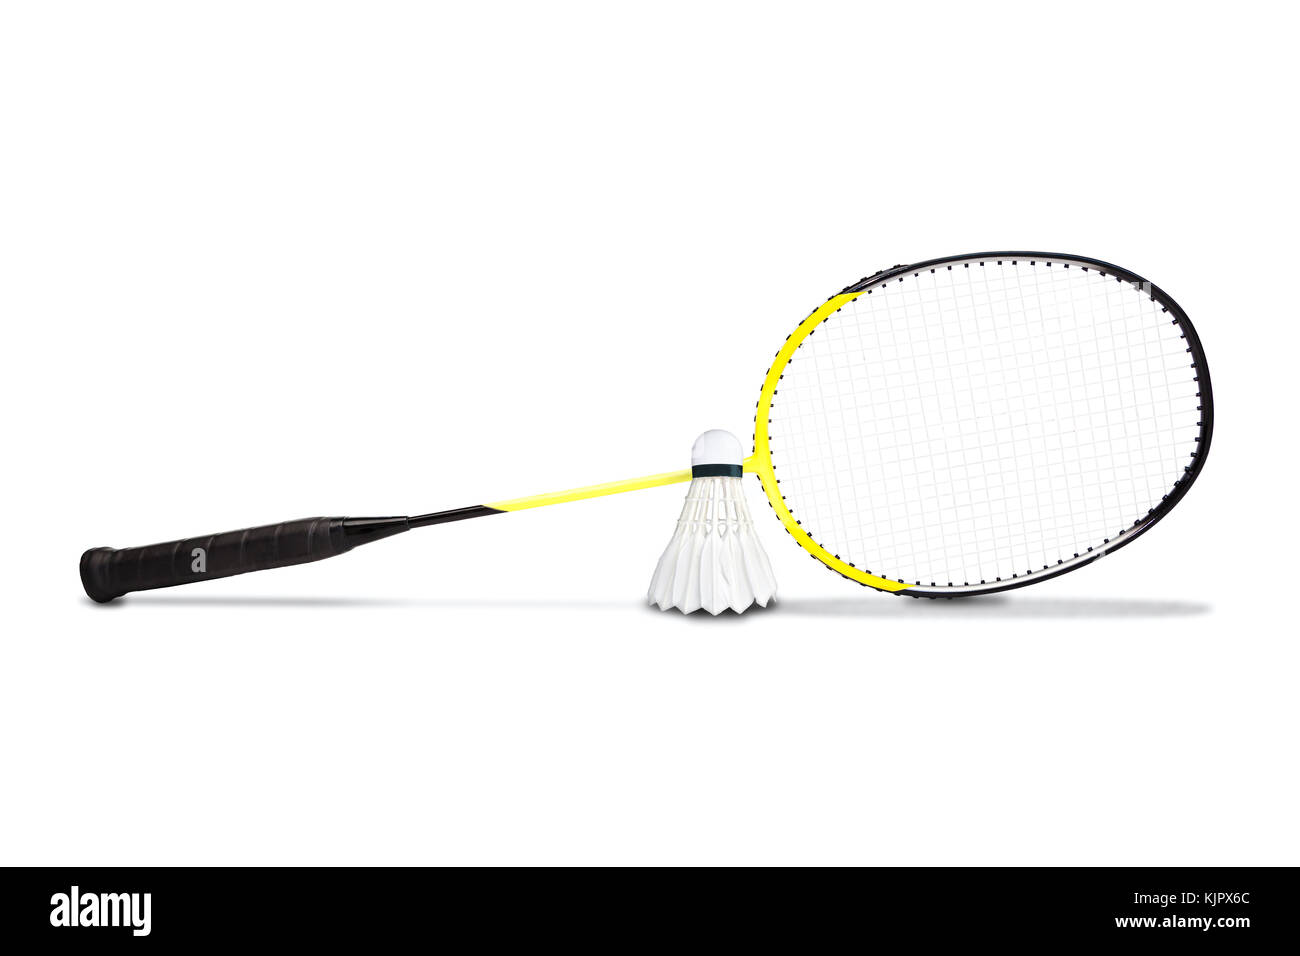 Raquette Badminton graphite jaune et volant isolé sur fond blanc Banque D'Images